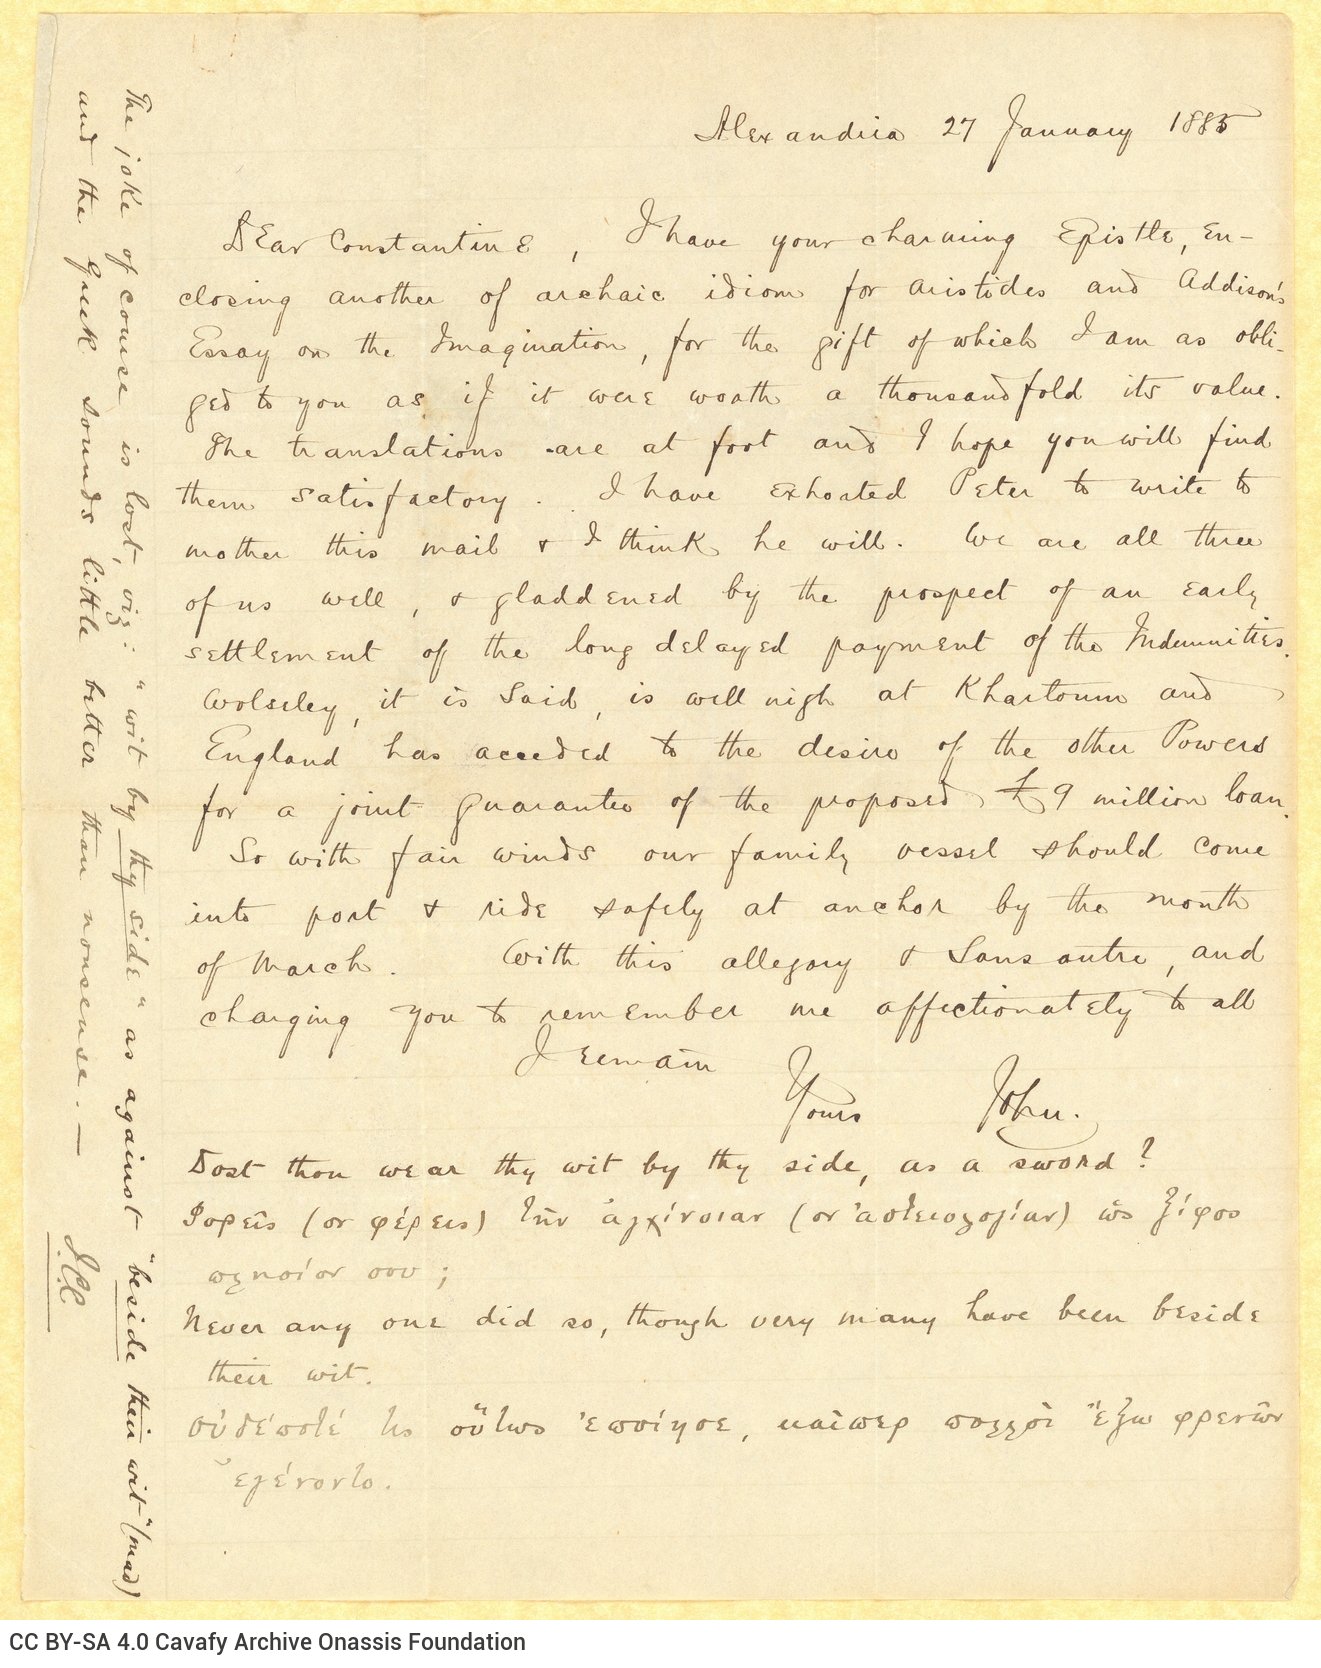 Χειρόγραφη επιστολή του Τζων Καβάφη προς τον Κ. Π. Καβάφη στη μία όψ